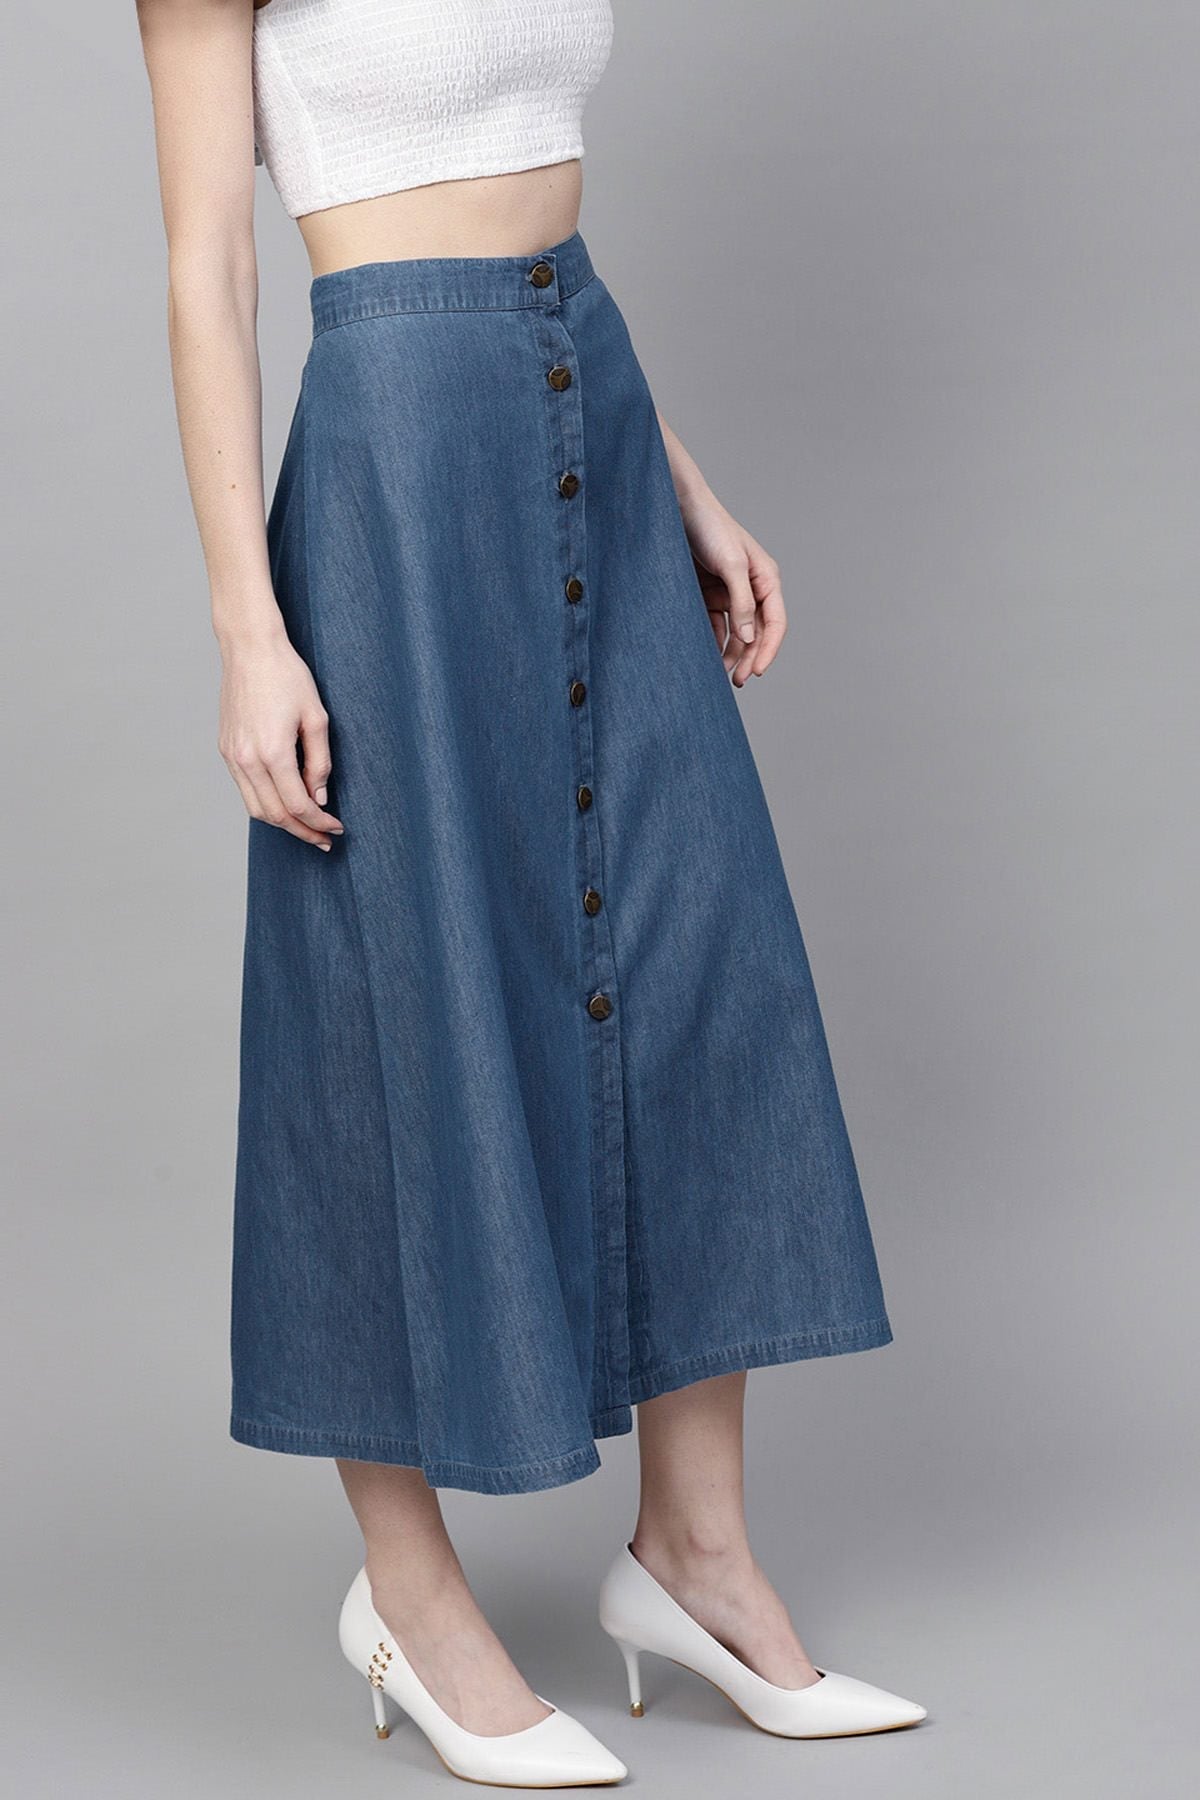 Women's Blue Denim Longline Buttoned Skirt - SASSAFRAS